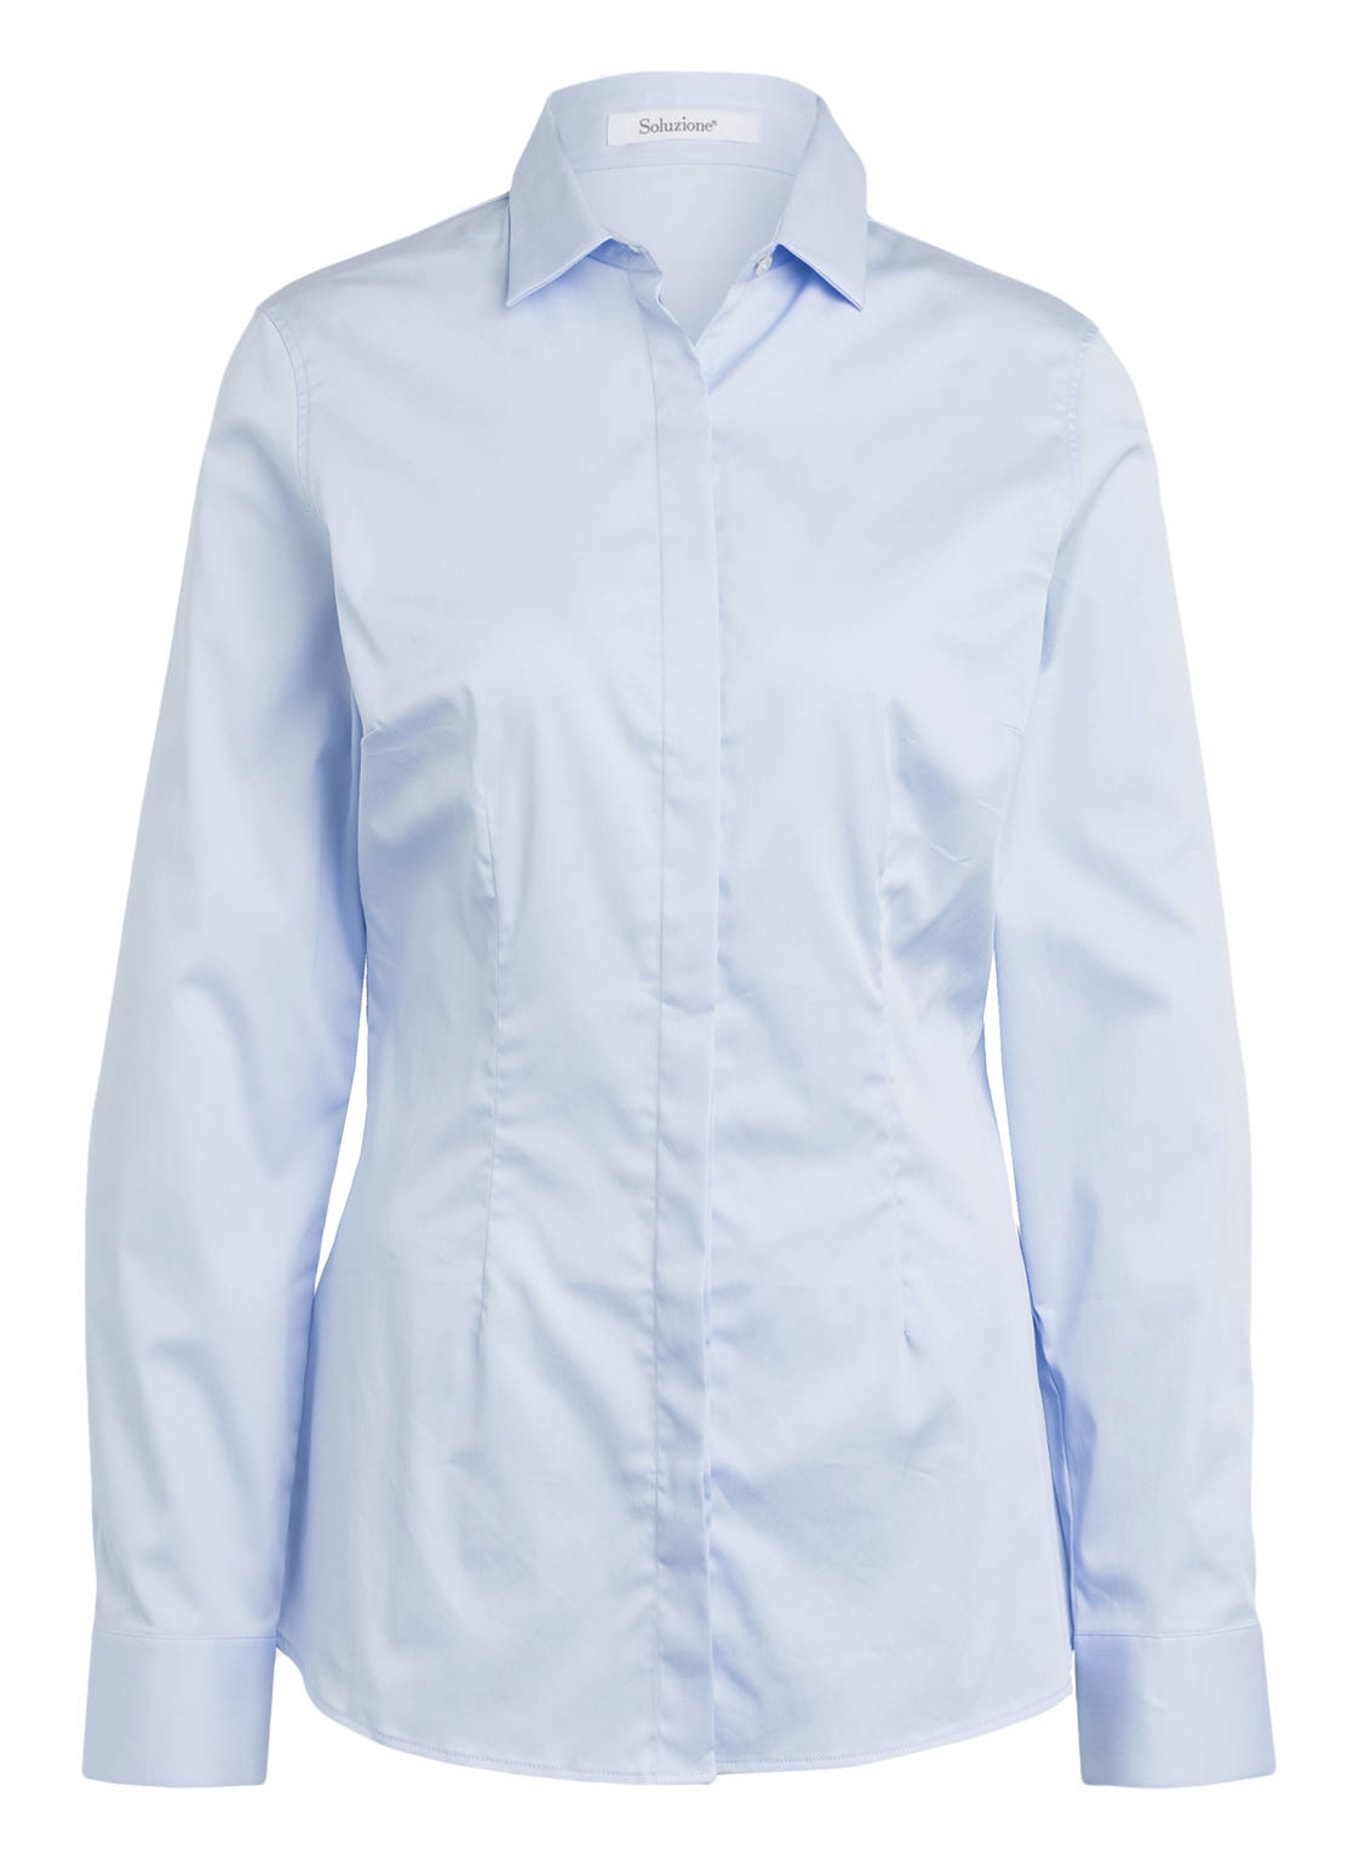 Soluzione Shirt blouse, Color: LIGHT BLUE (Image 1)